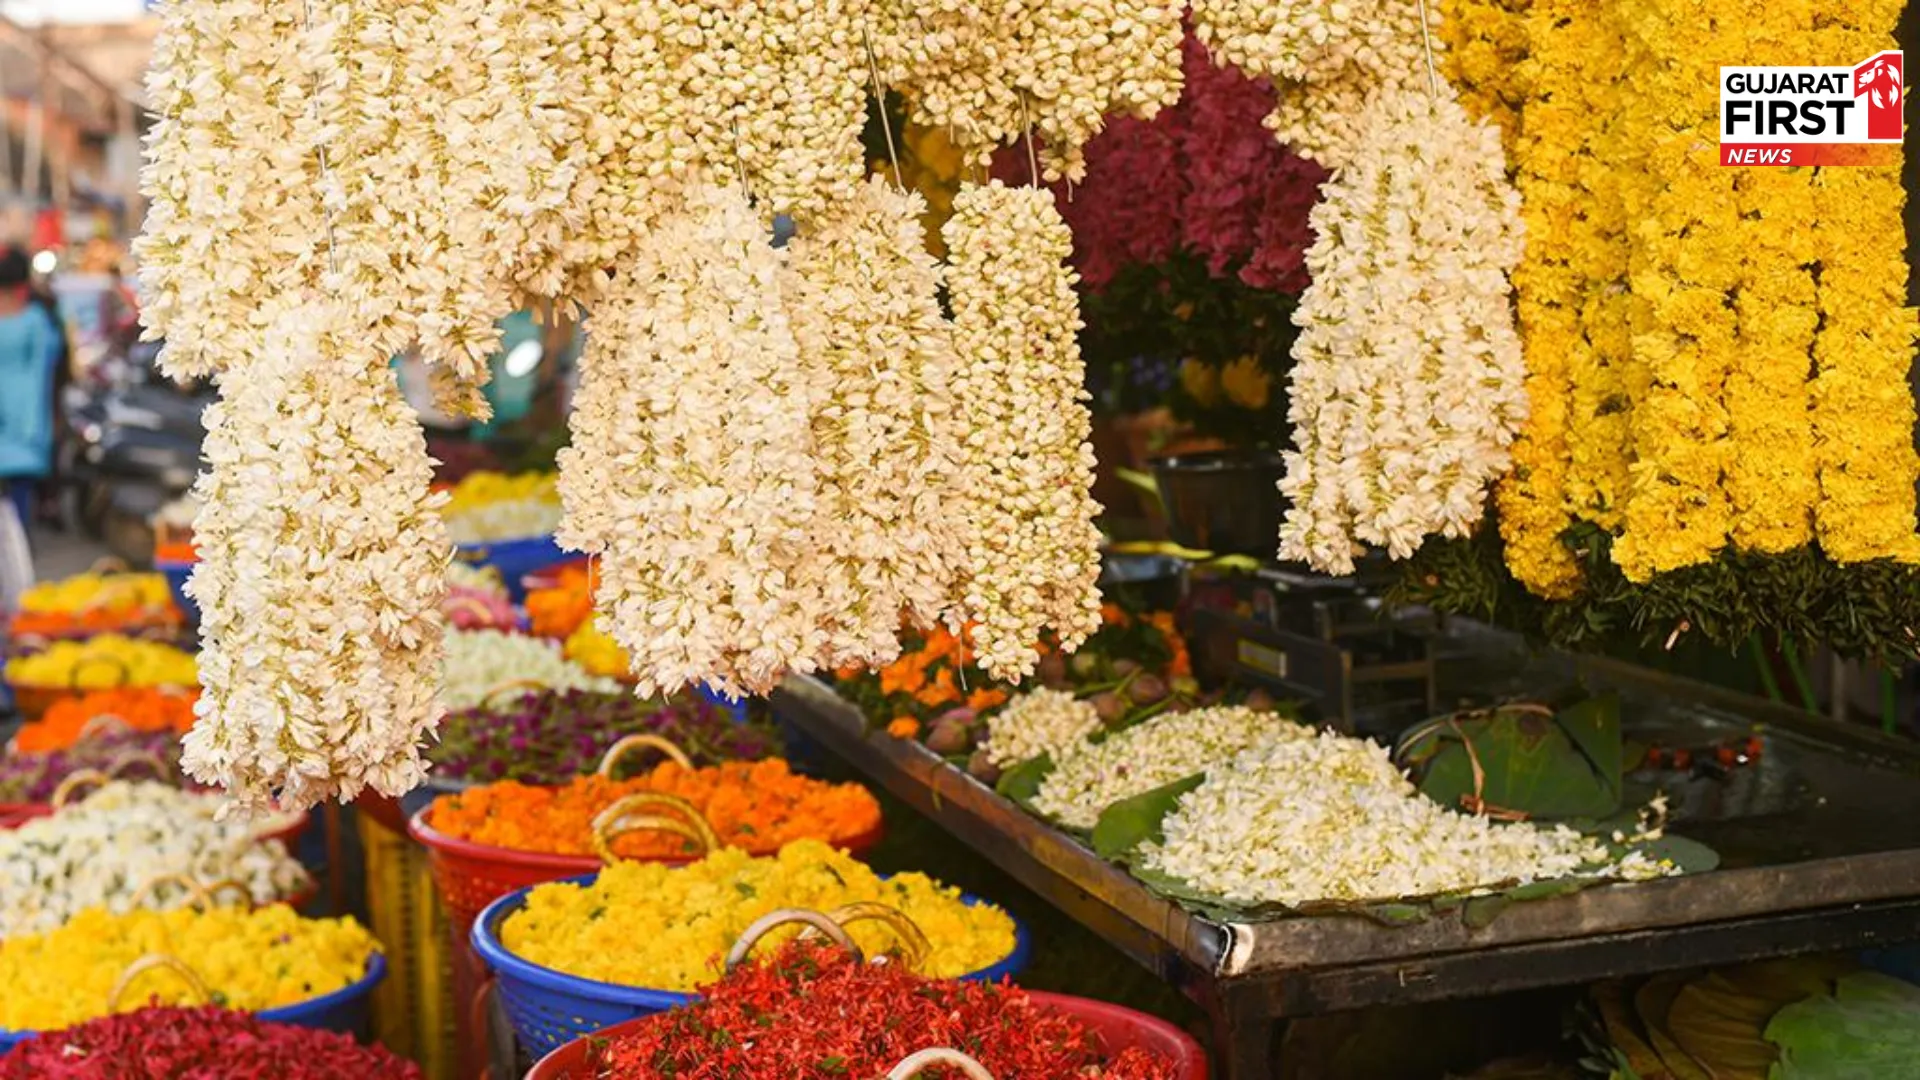 Chhota Udepur Flowers Rate